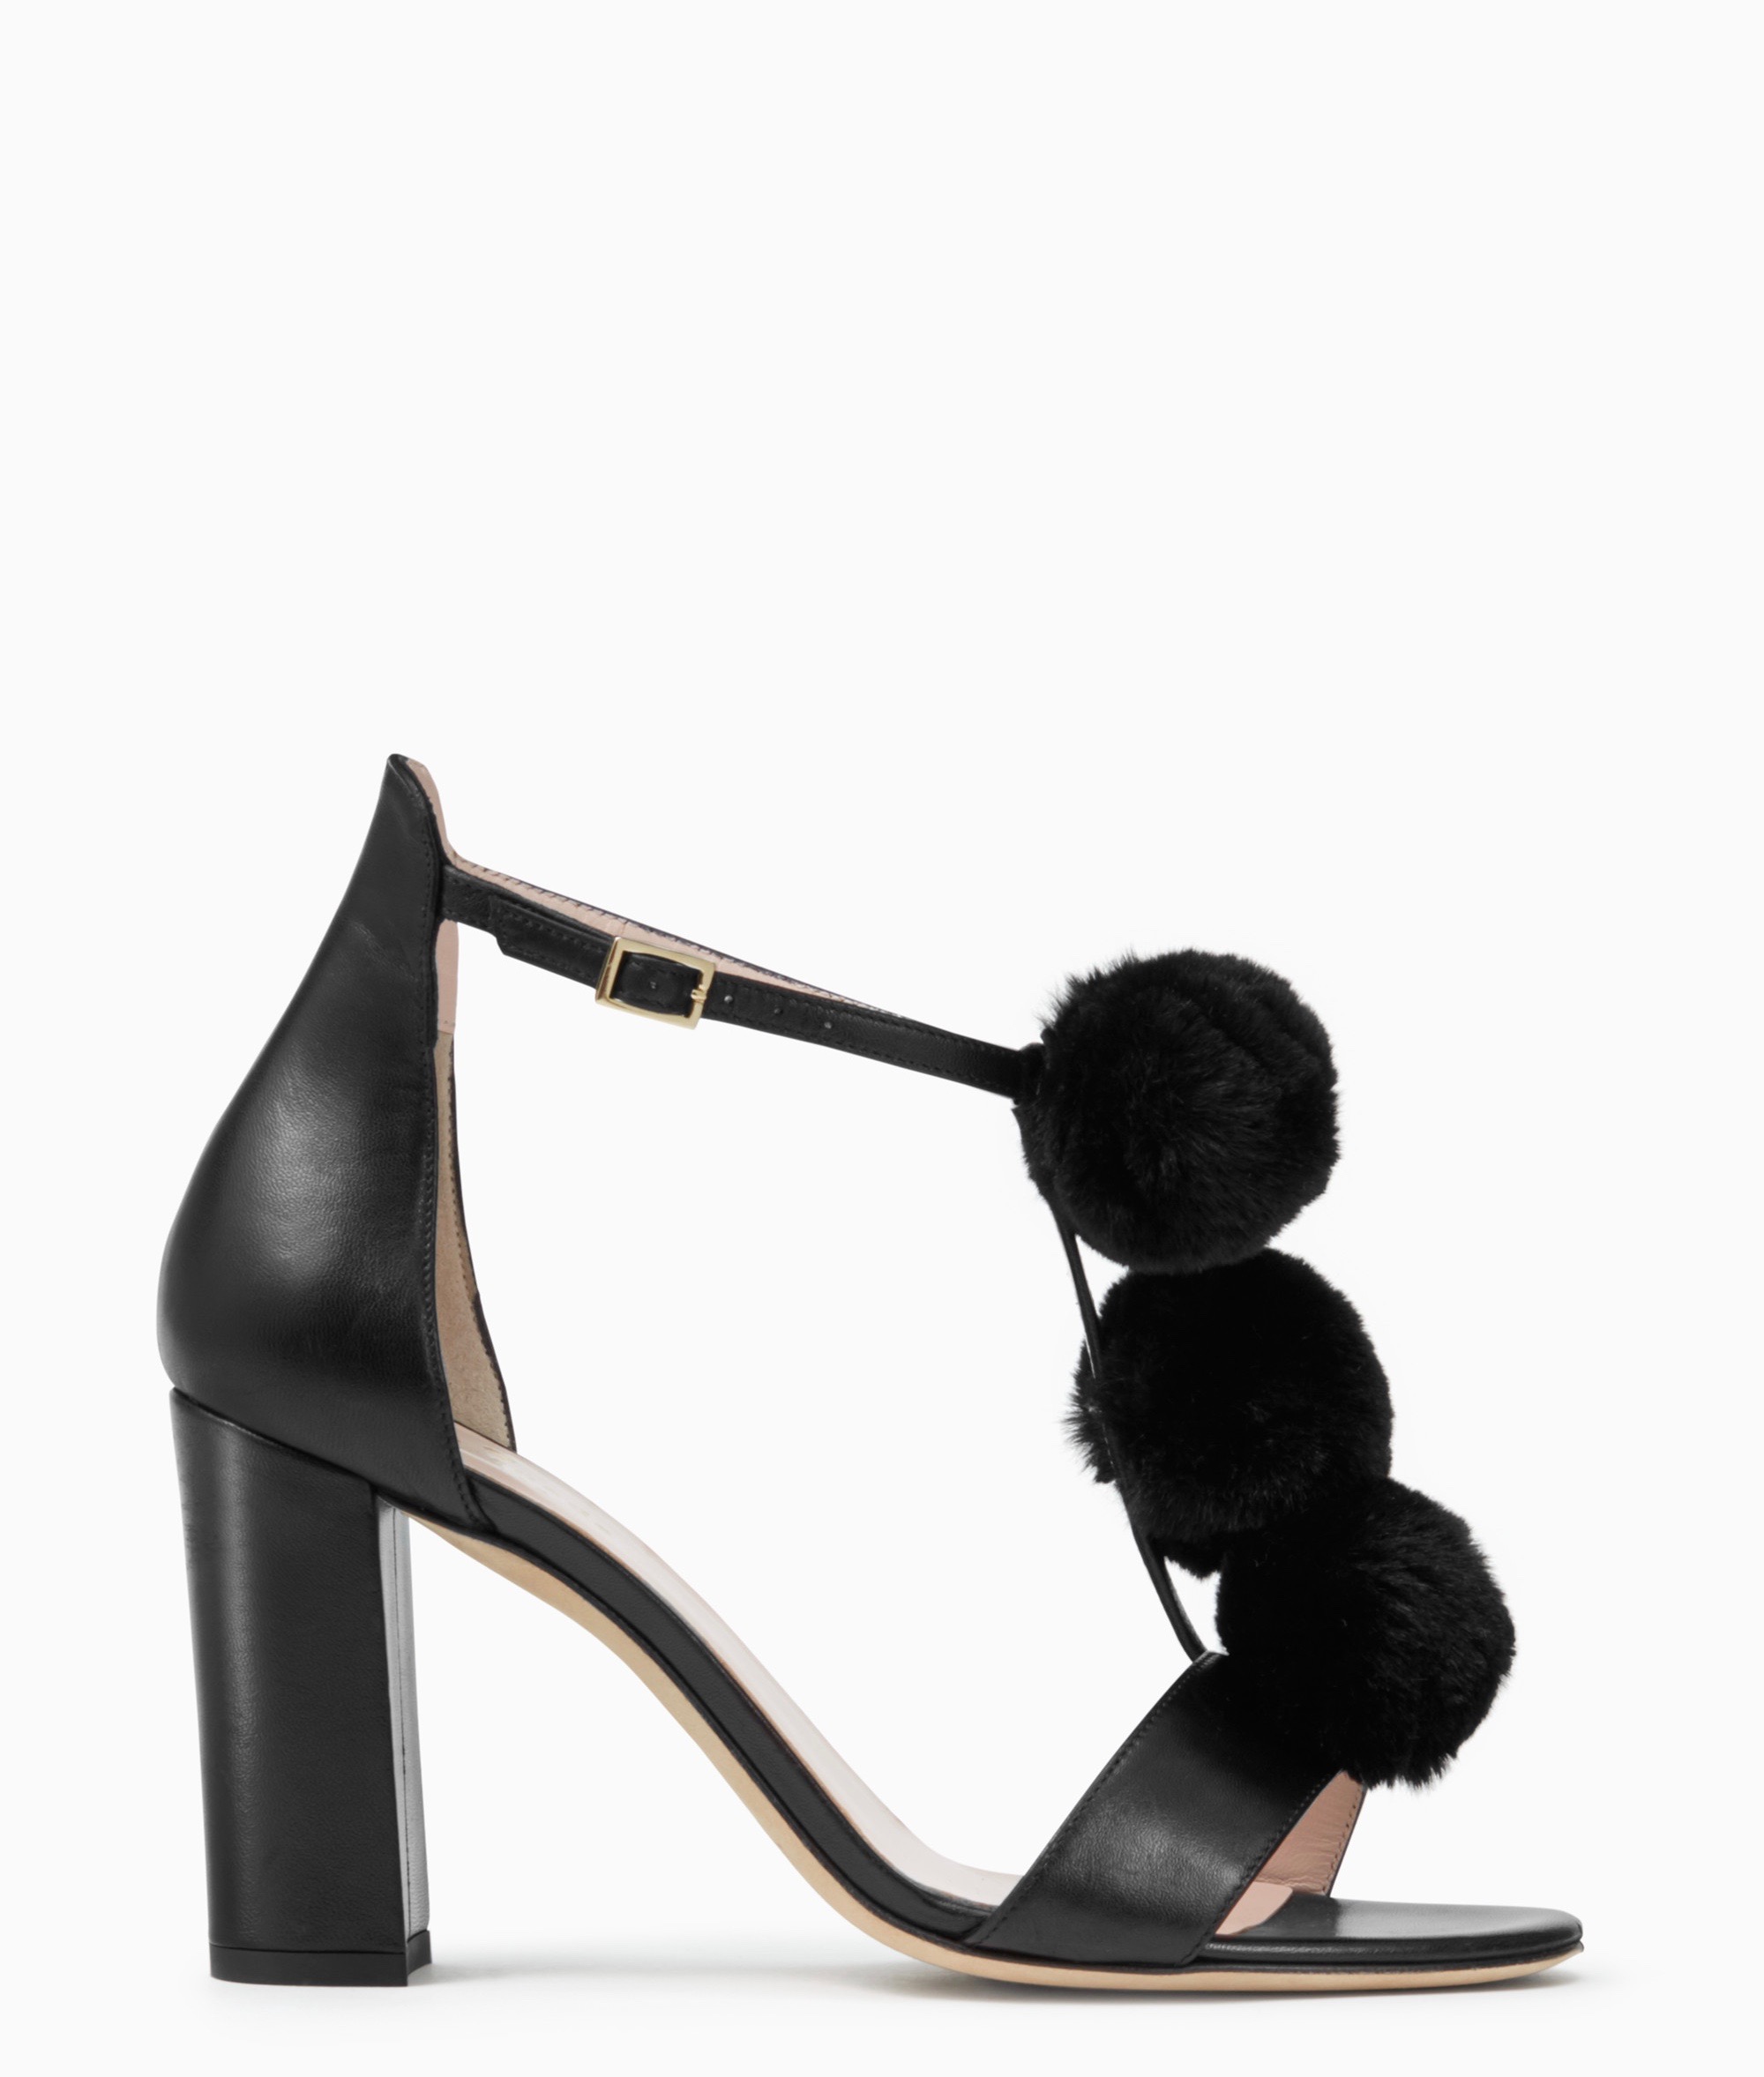 india-heels-kate-spade-new-york-black-pom-pom